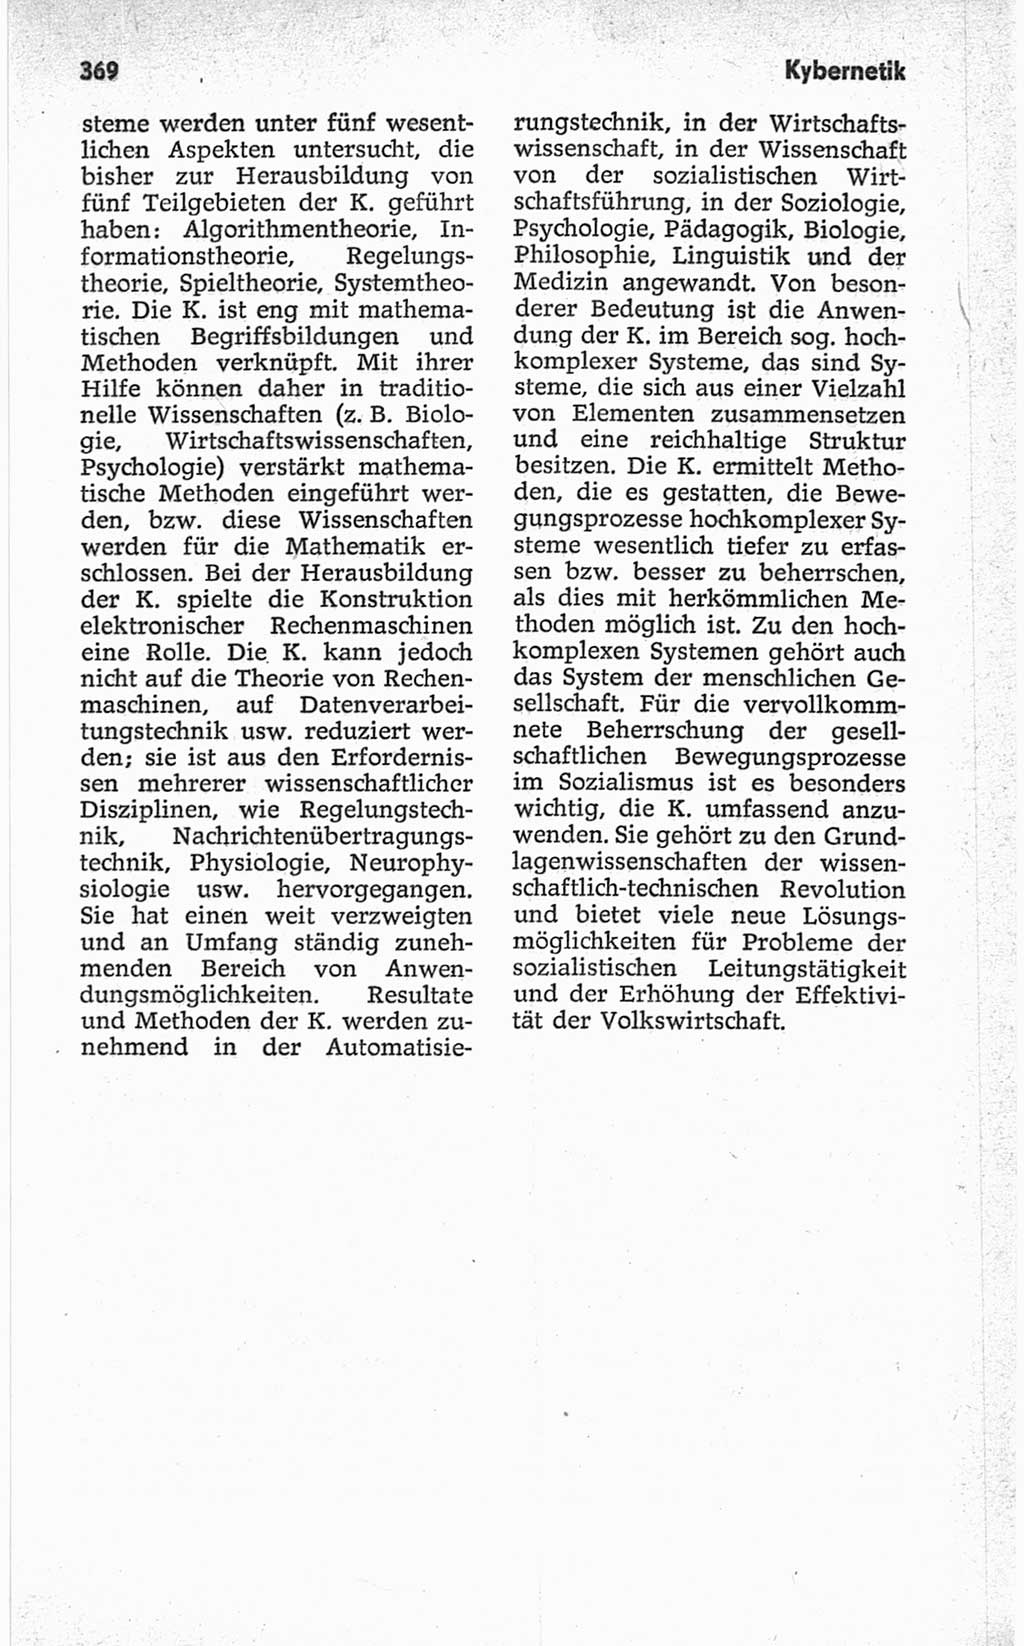 Kleines politisches Wörterbuch [Deutsche Demokratische Republik (DDR)] 1967, Seite 369 (Kl. pol. Wb. DDR 1967, S. 369)